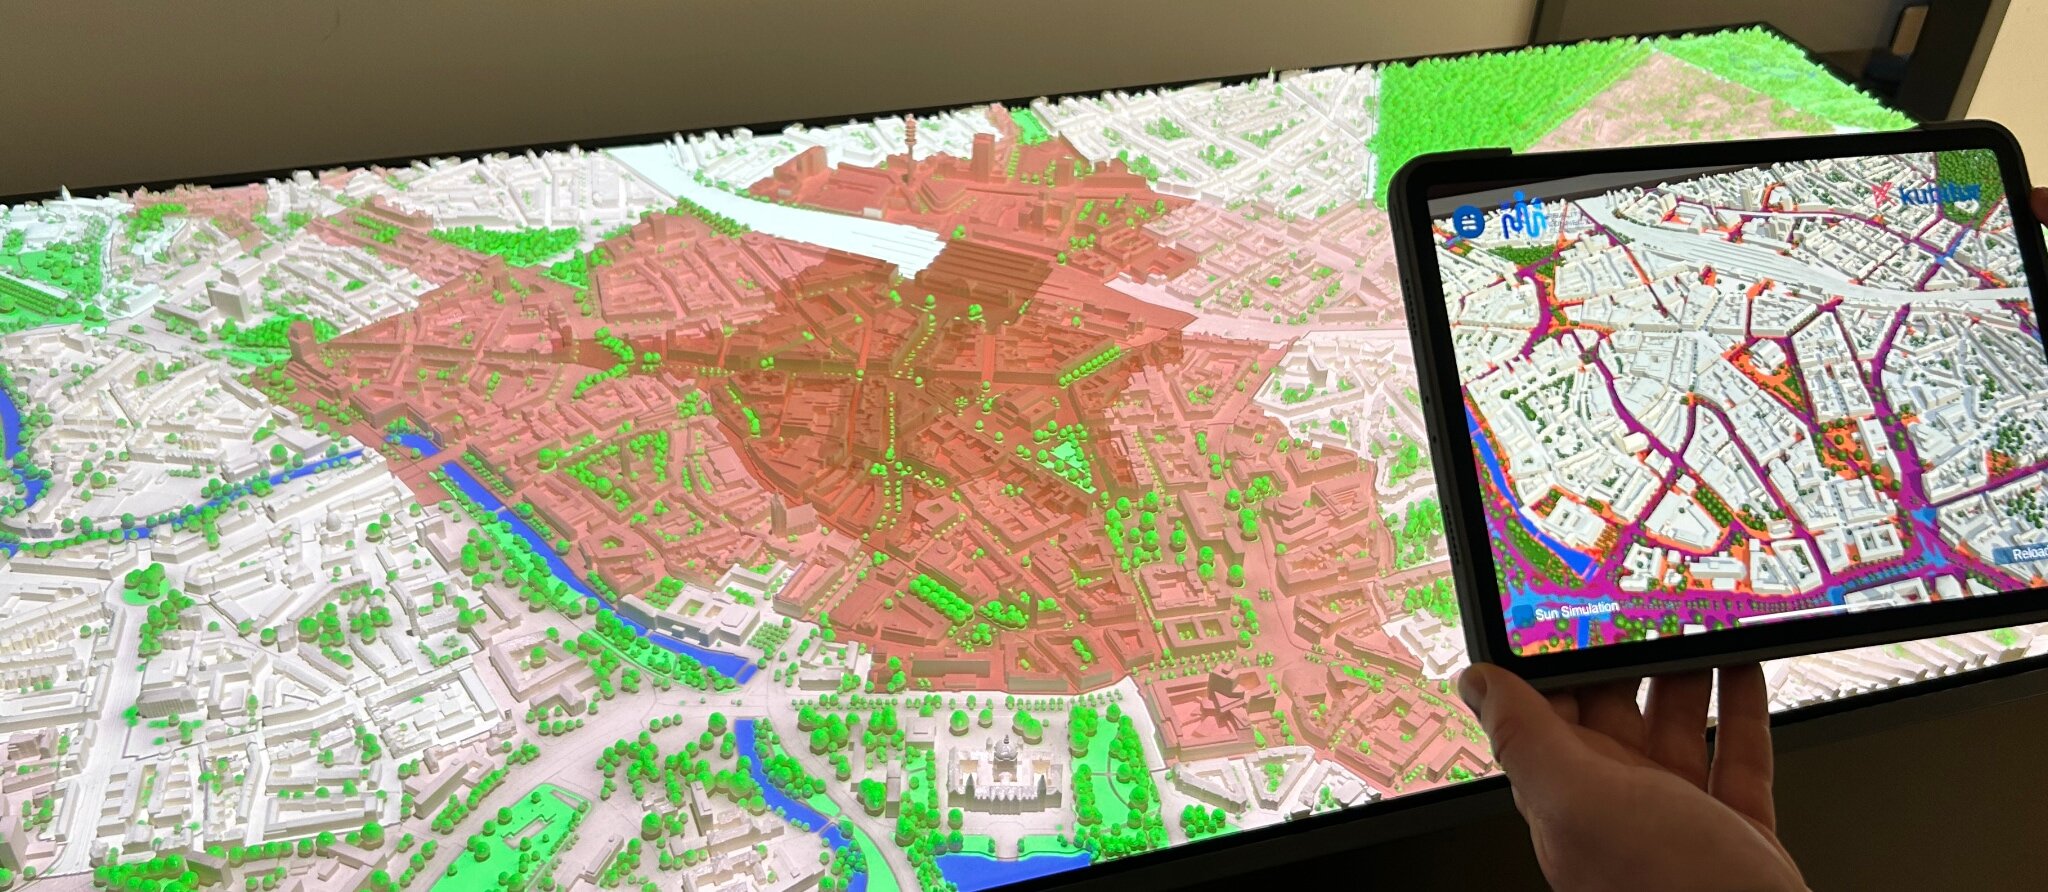 Besuch bei Kubitur: Virtuelle Stadtplanung zum Anfassen